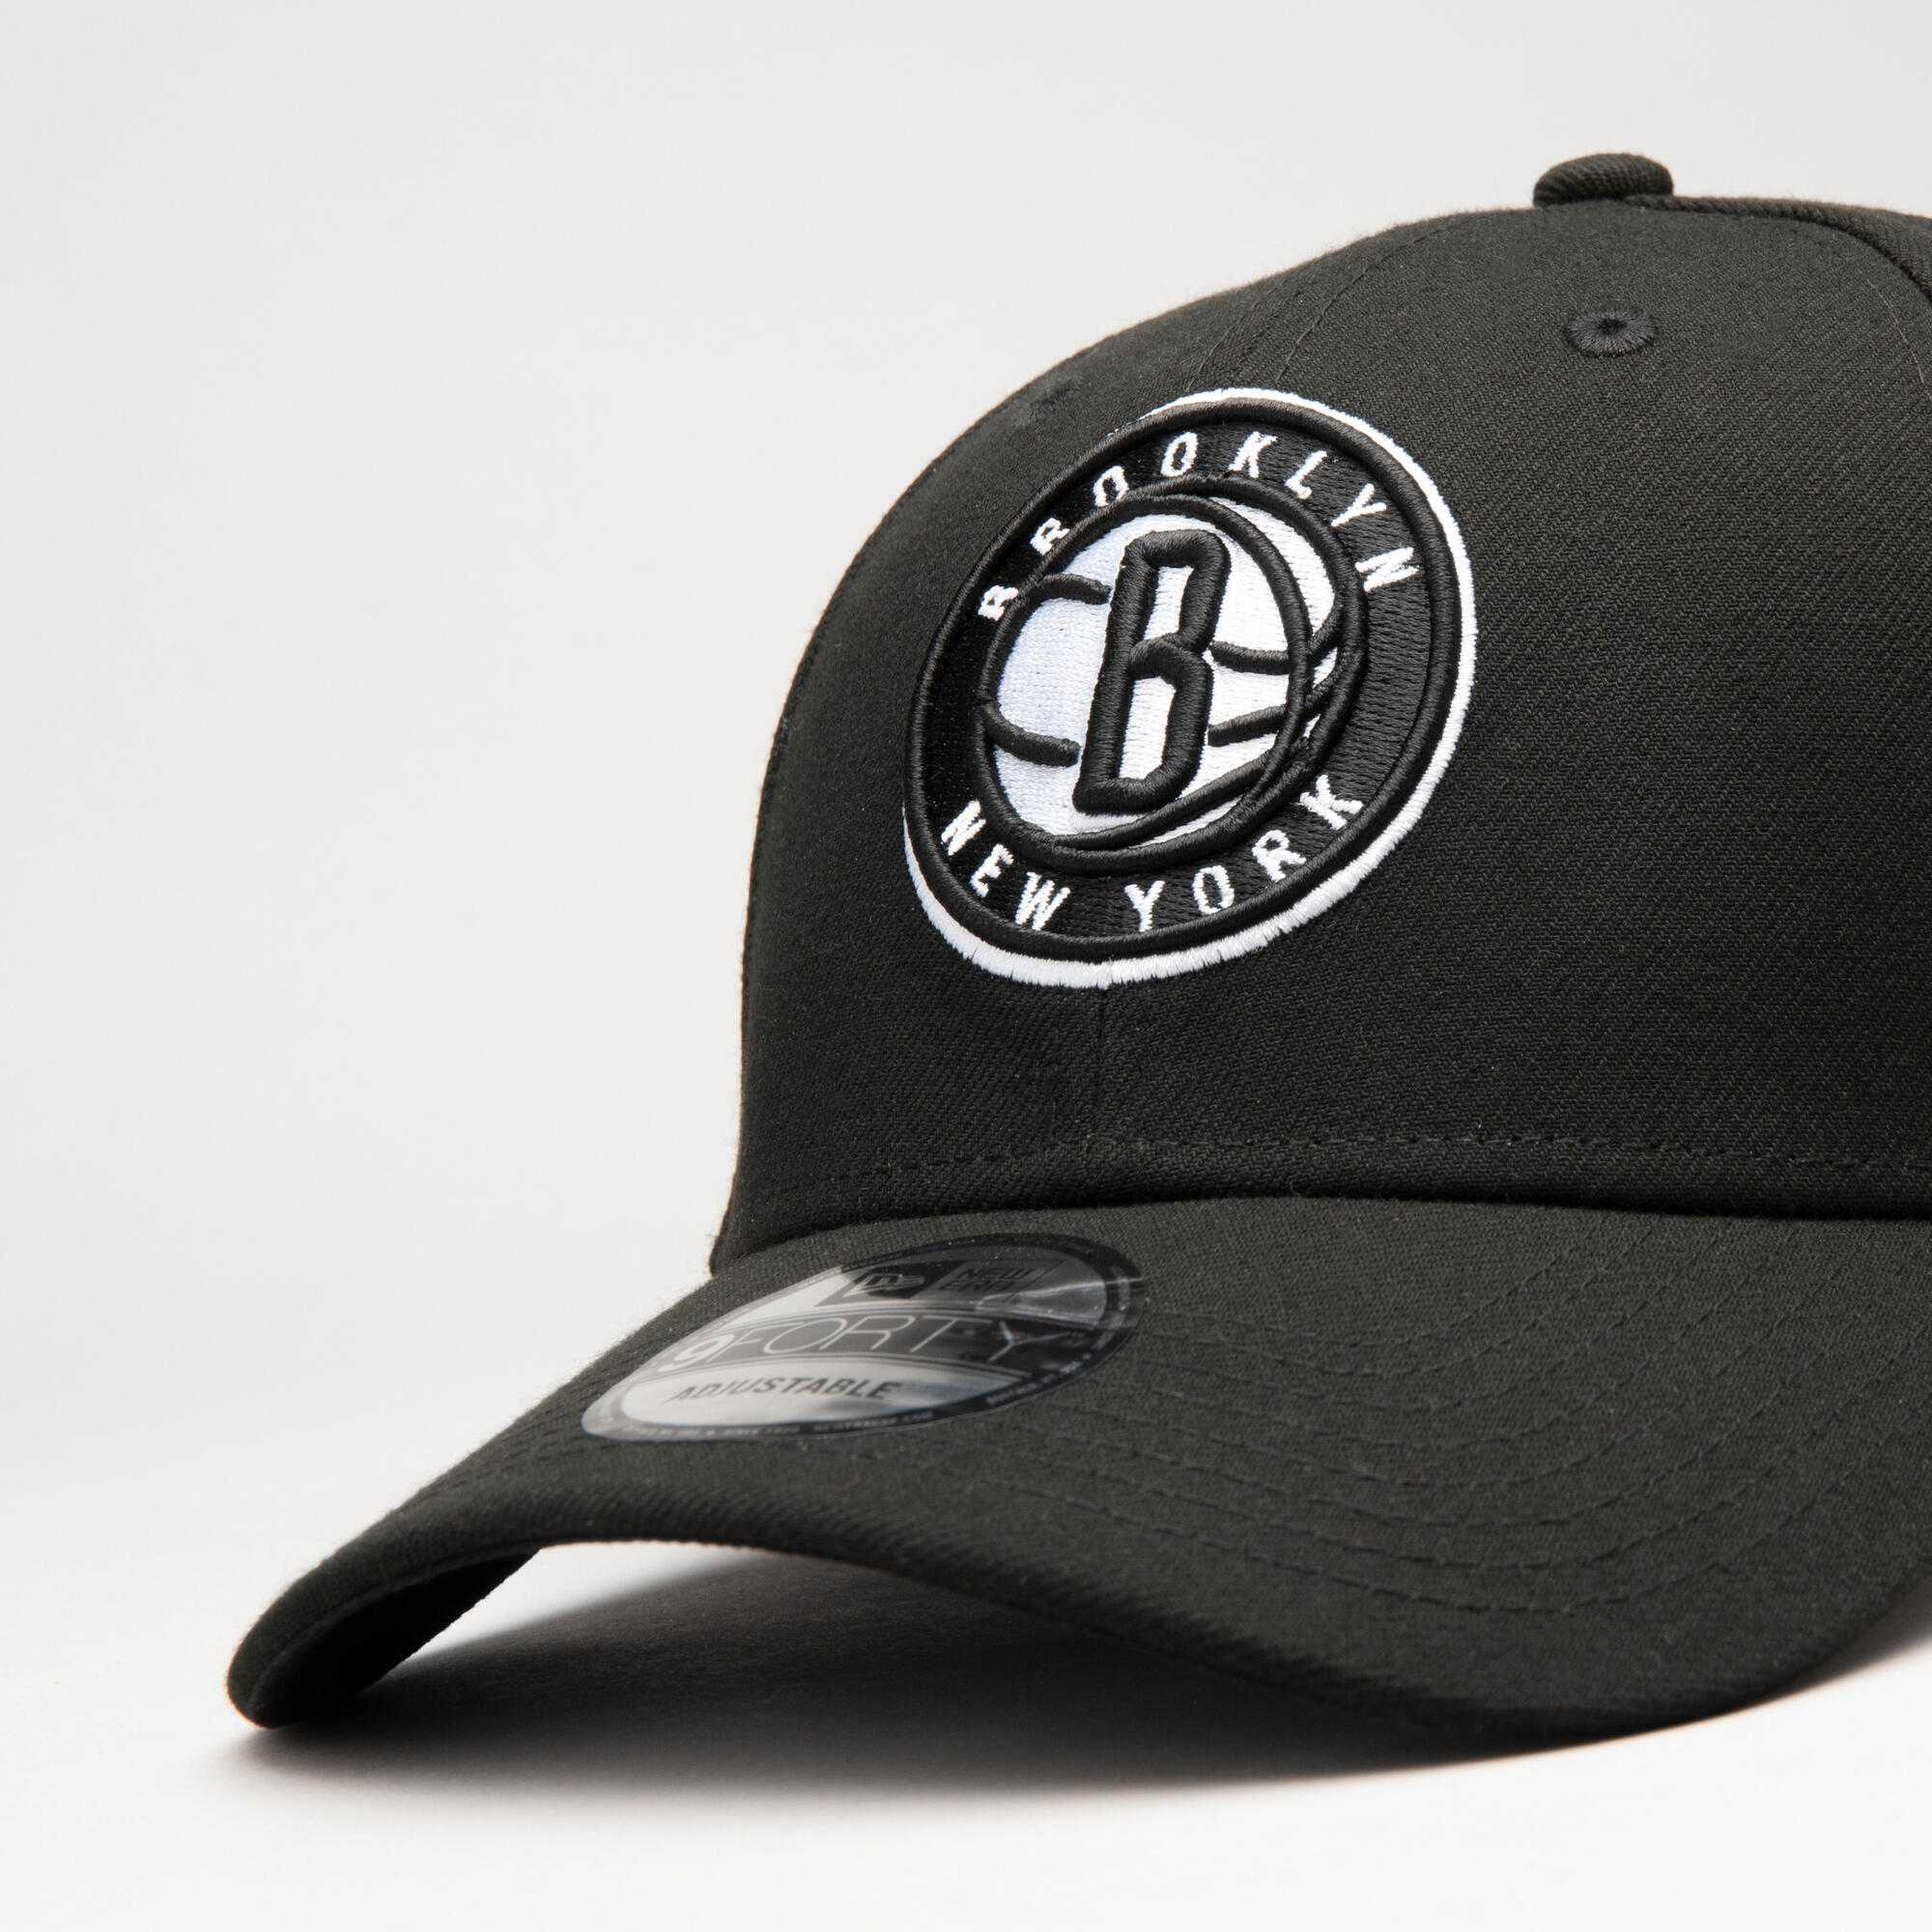 Adidas Nba Brooklyn Nets Uomo Accessori Cappelli e berretti Berretti NBA Berretti 